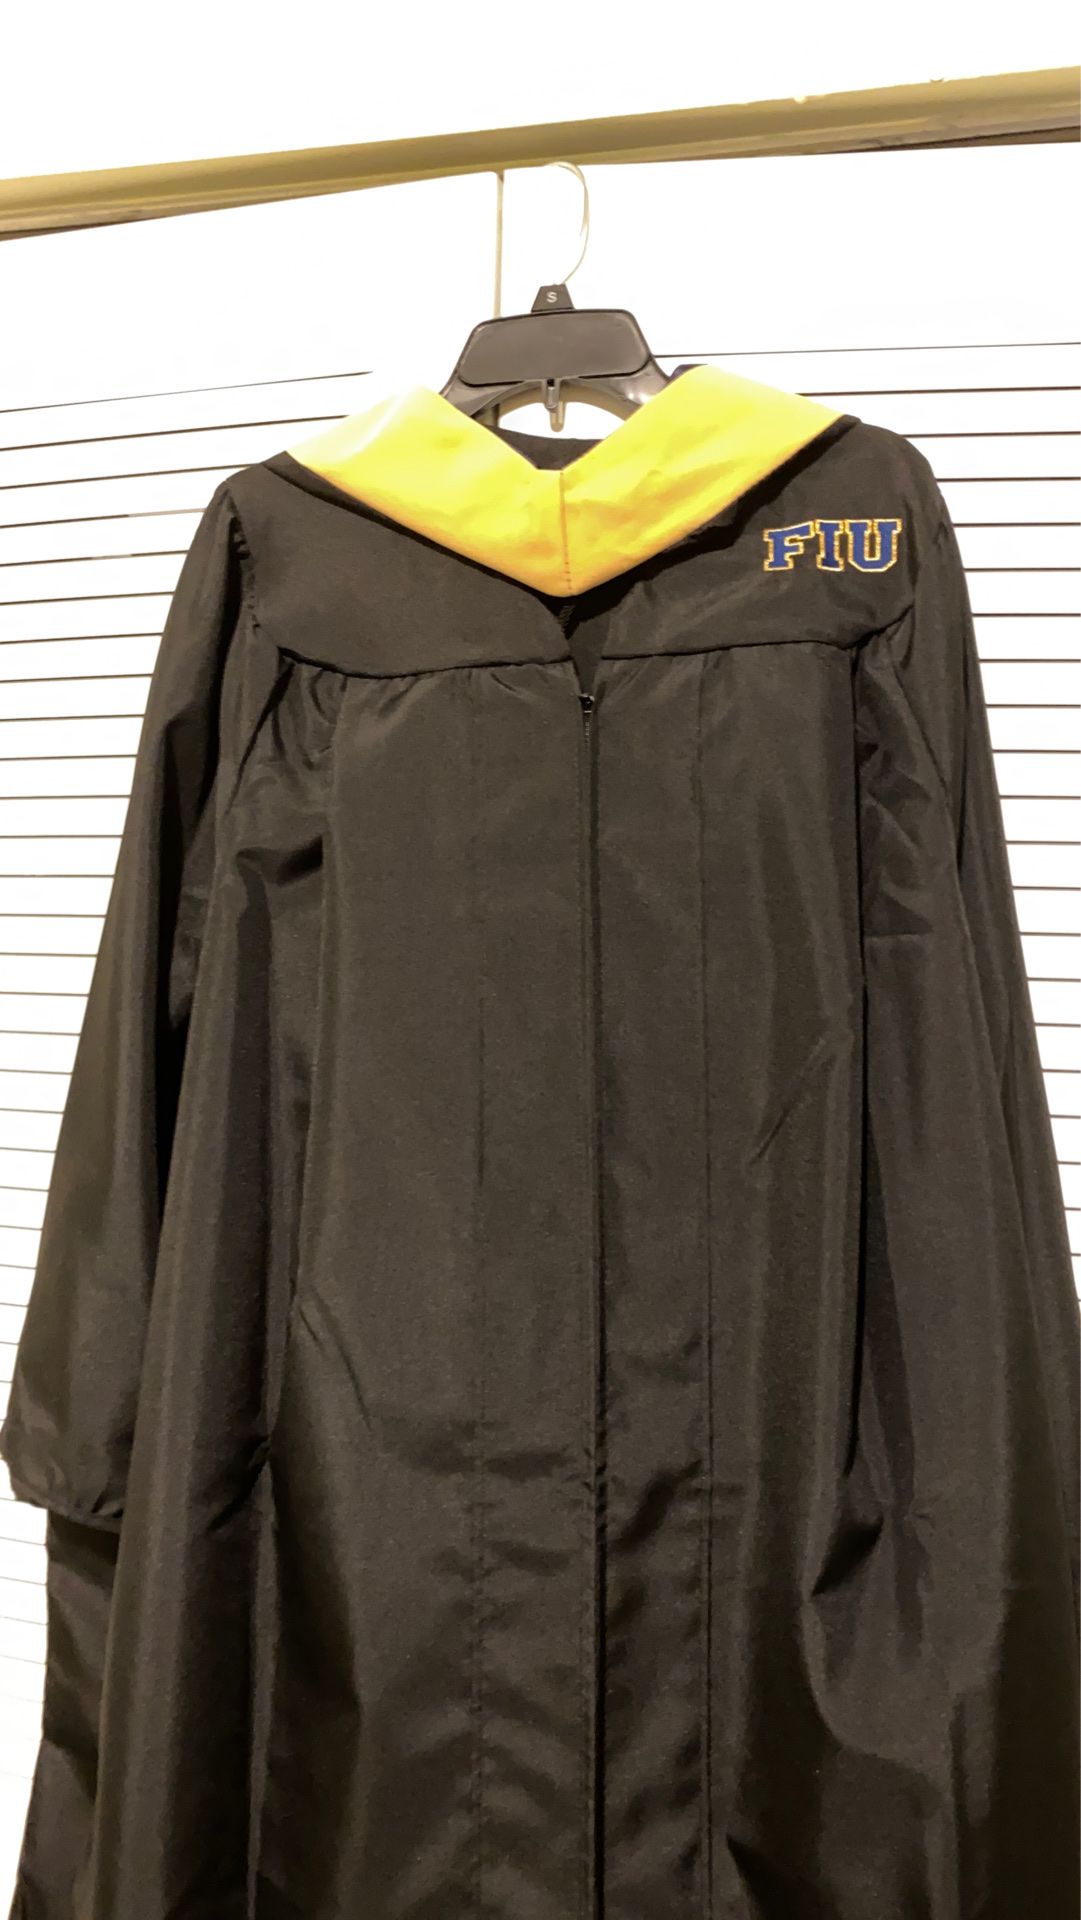 FIU Master’s Graduate Cap & Gown